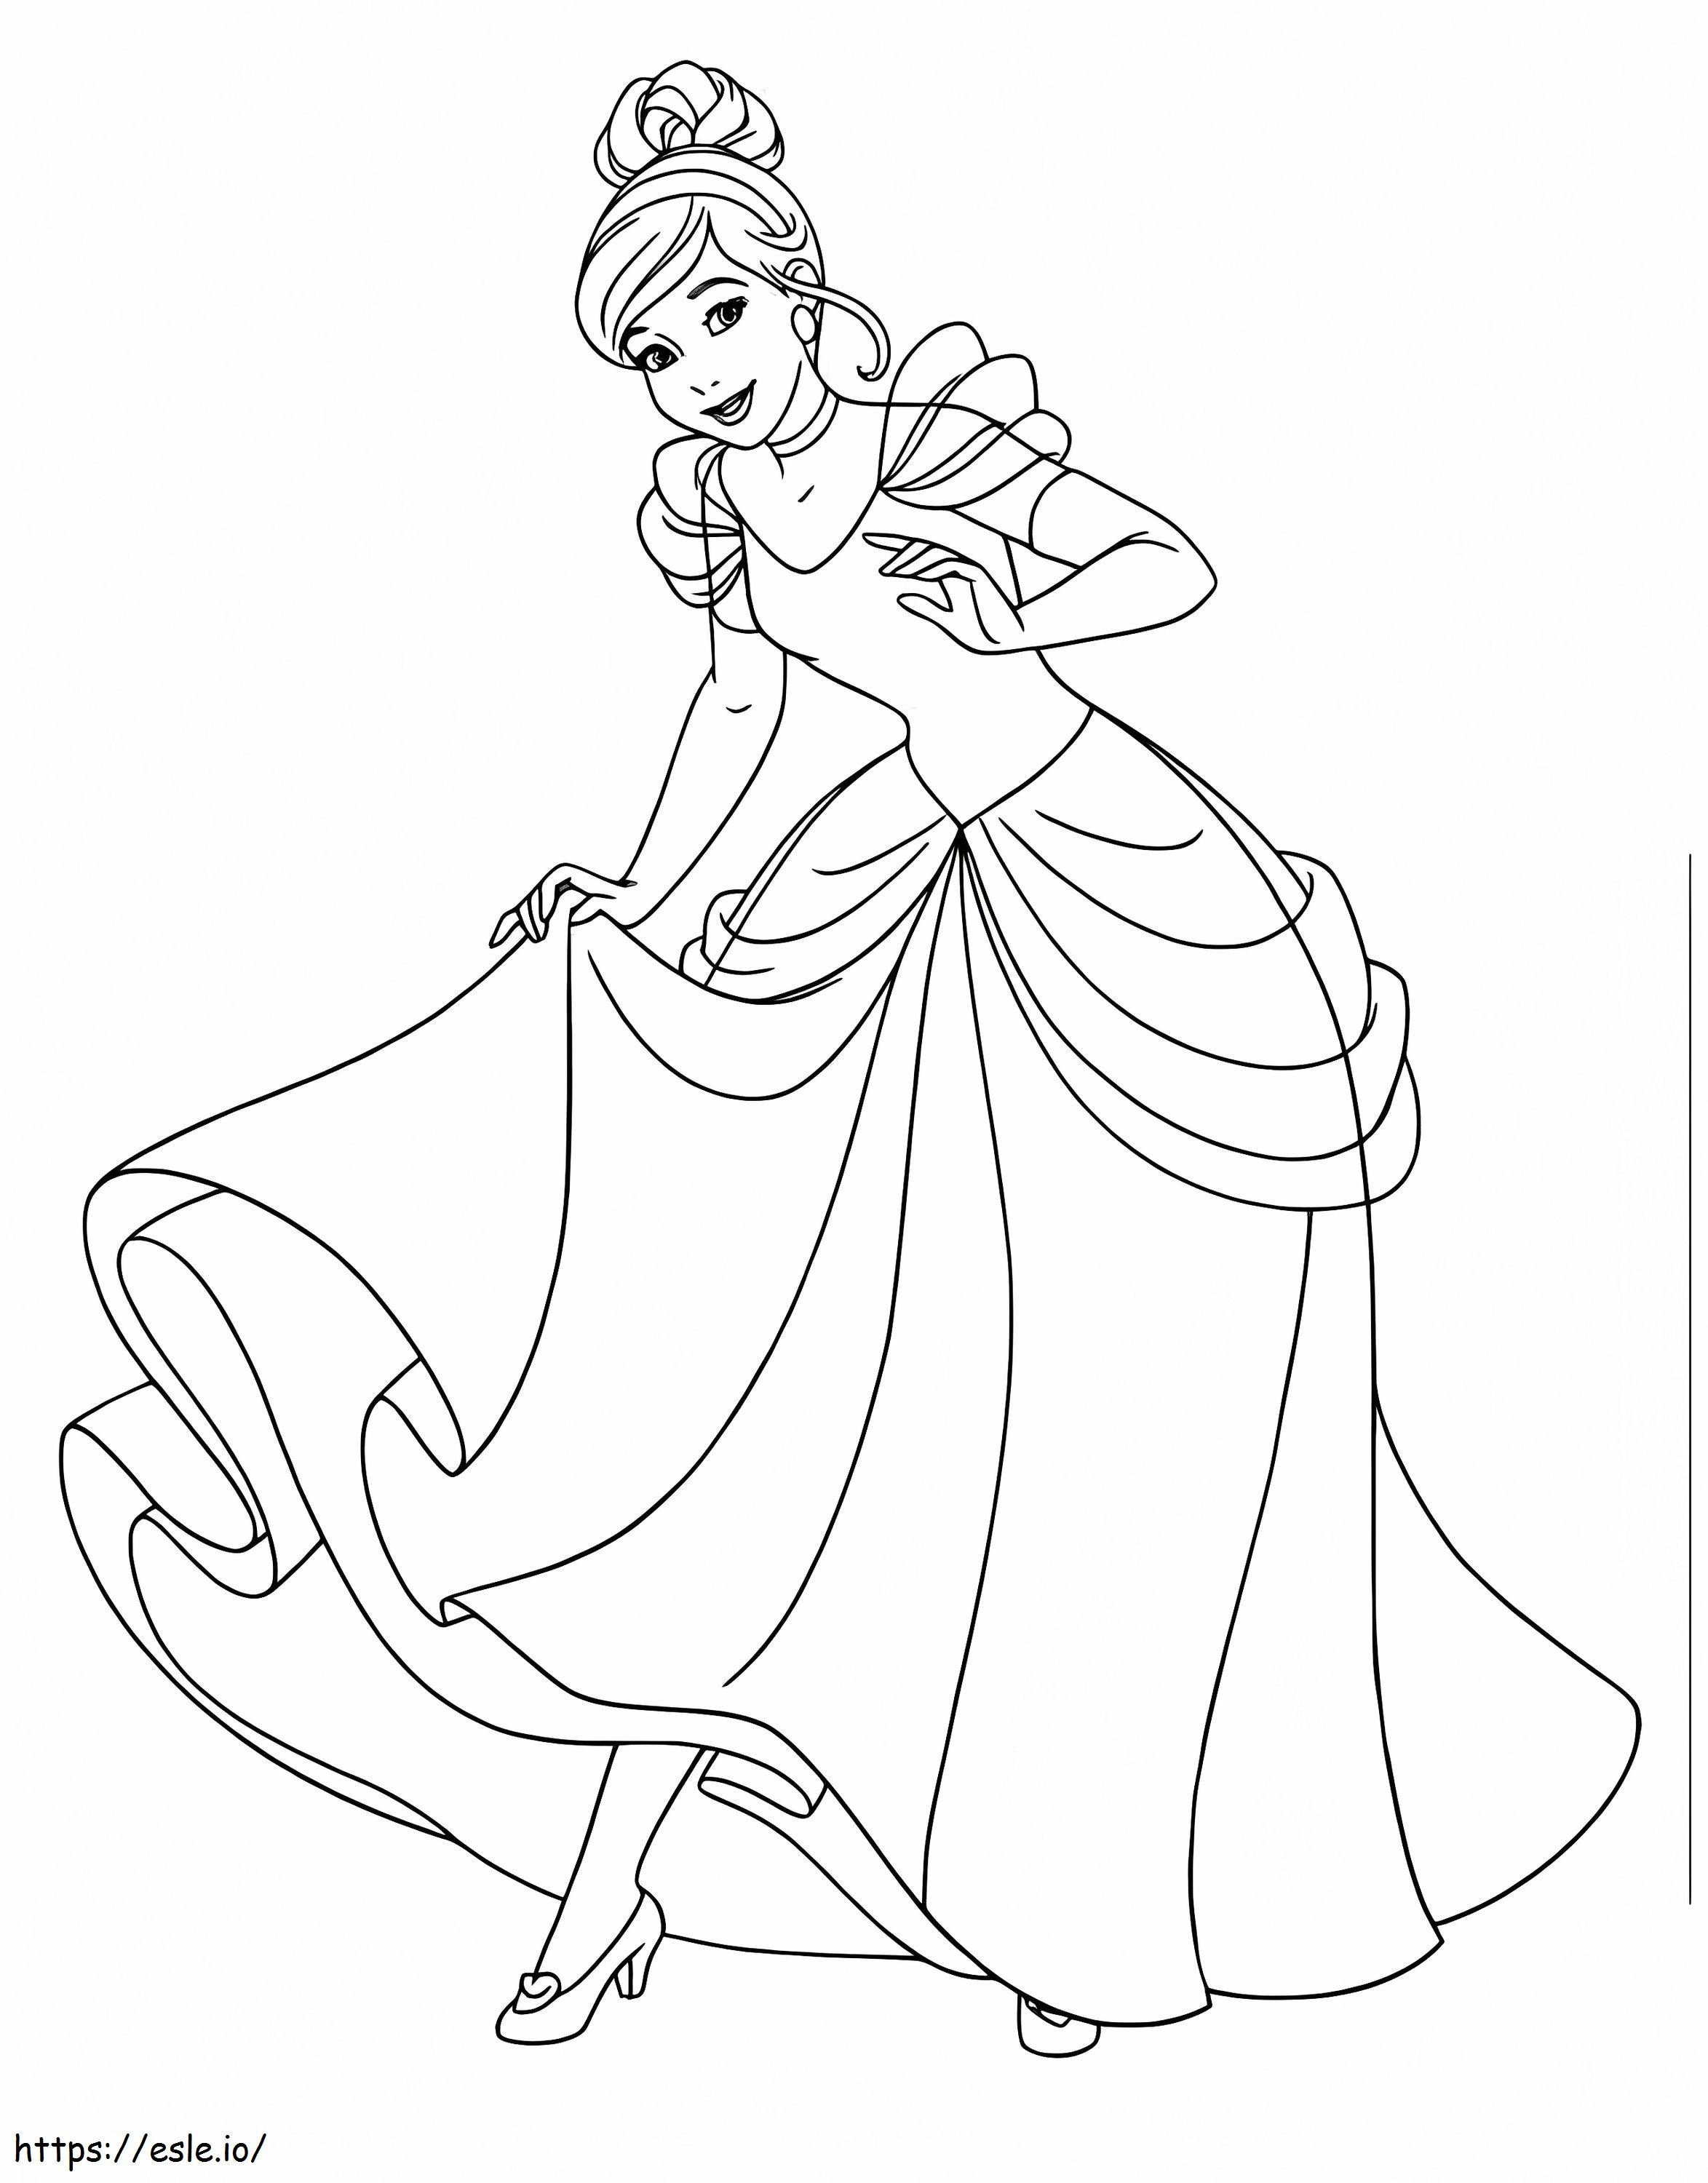 Smiling Cinderella coloring page